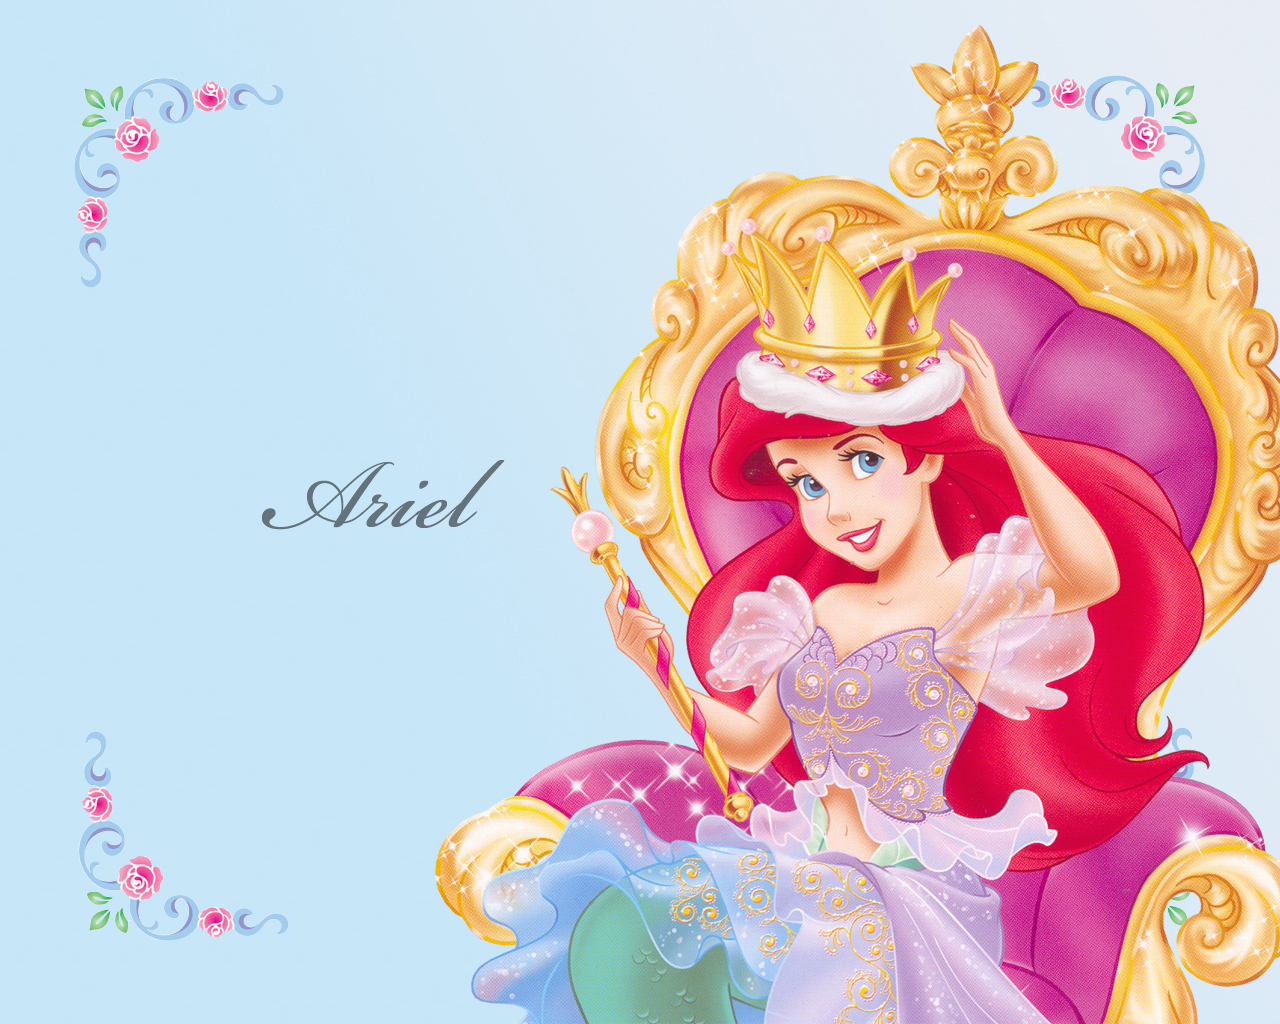 [78 ] Princess Ariel Wallpaper On Wallpapersafari